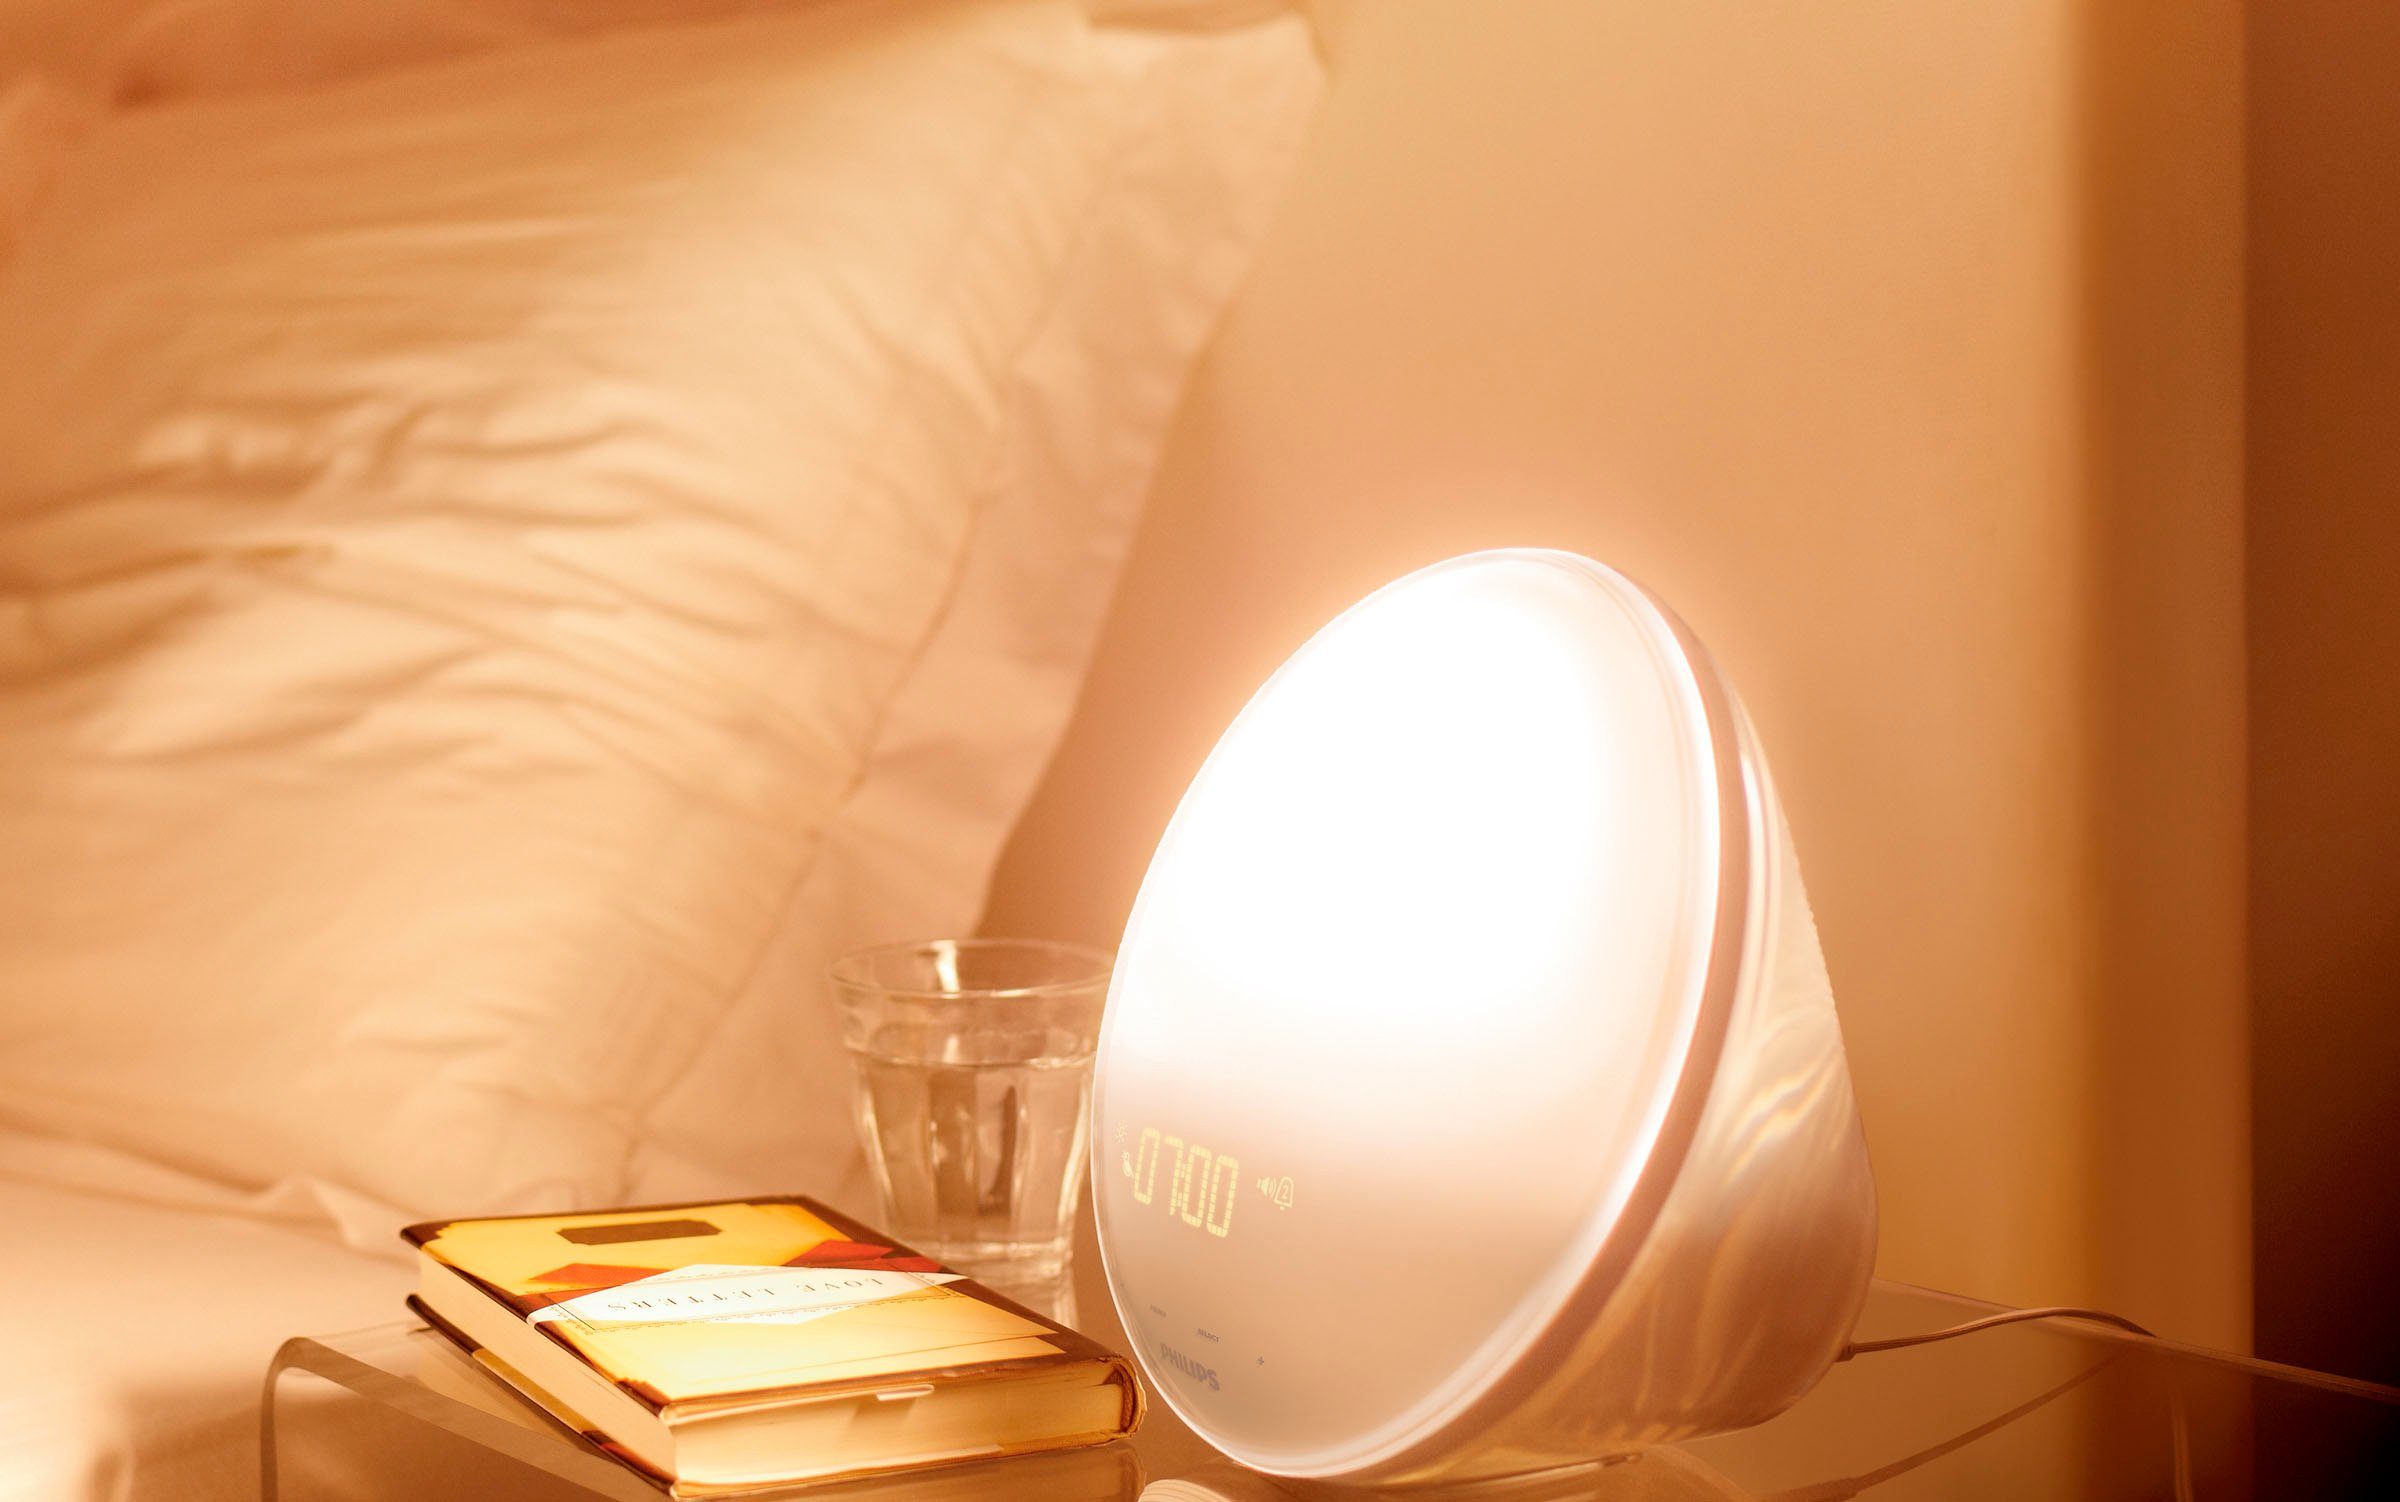 Fantasierijk Van toepassing slim Philips Daglichtwekker HF3519/01 Wake Up Light voor natuurlijker wakker  worden nu online kopen | OTTO